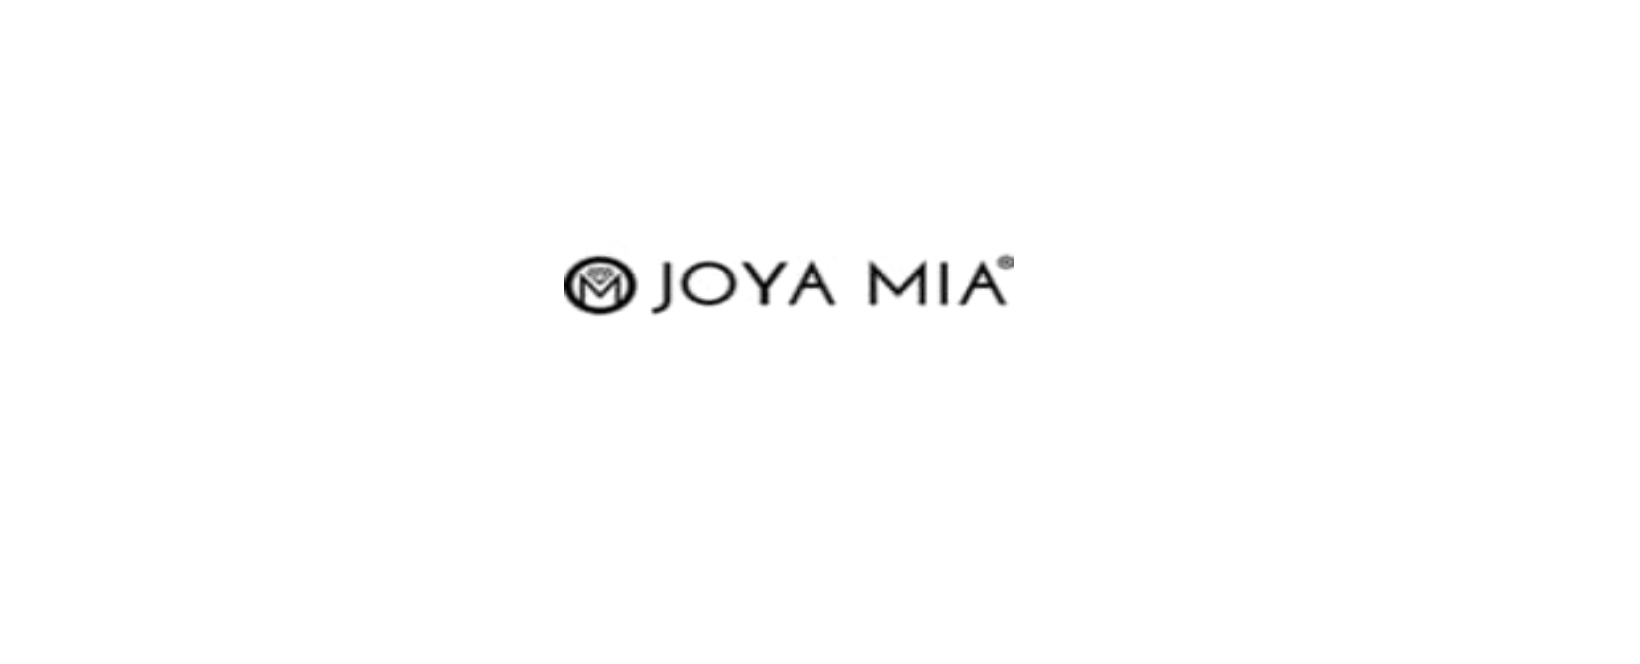 Joya Mia Discount Code 2022